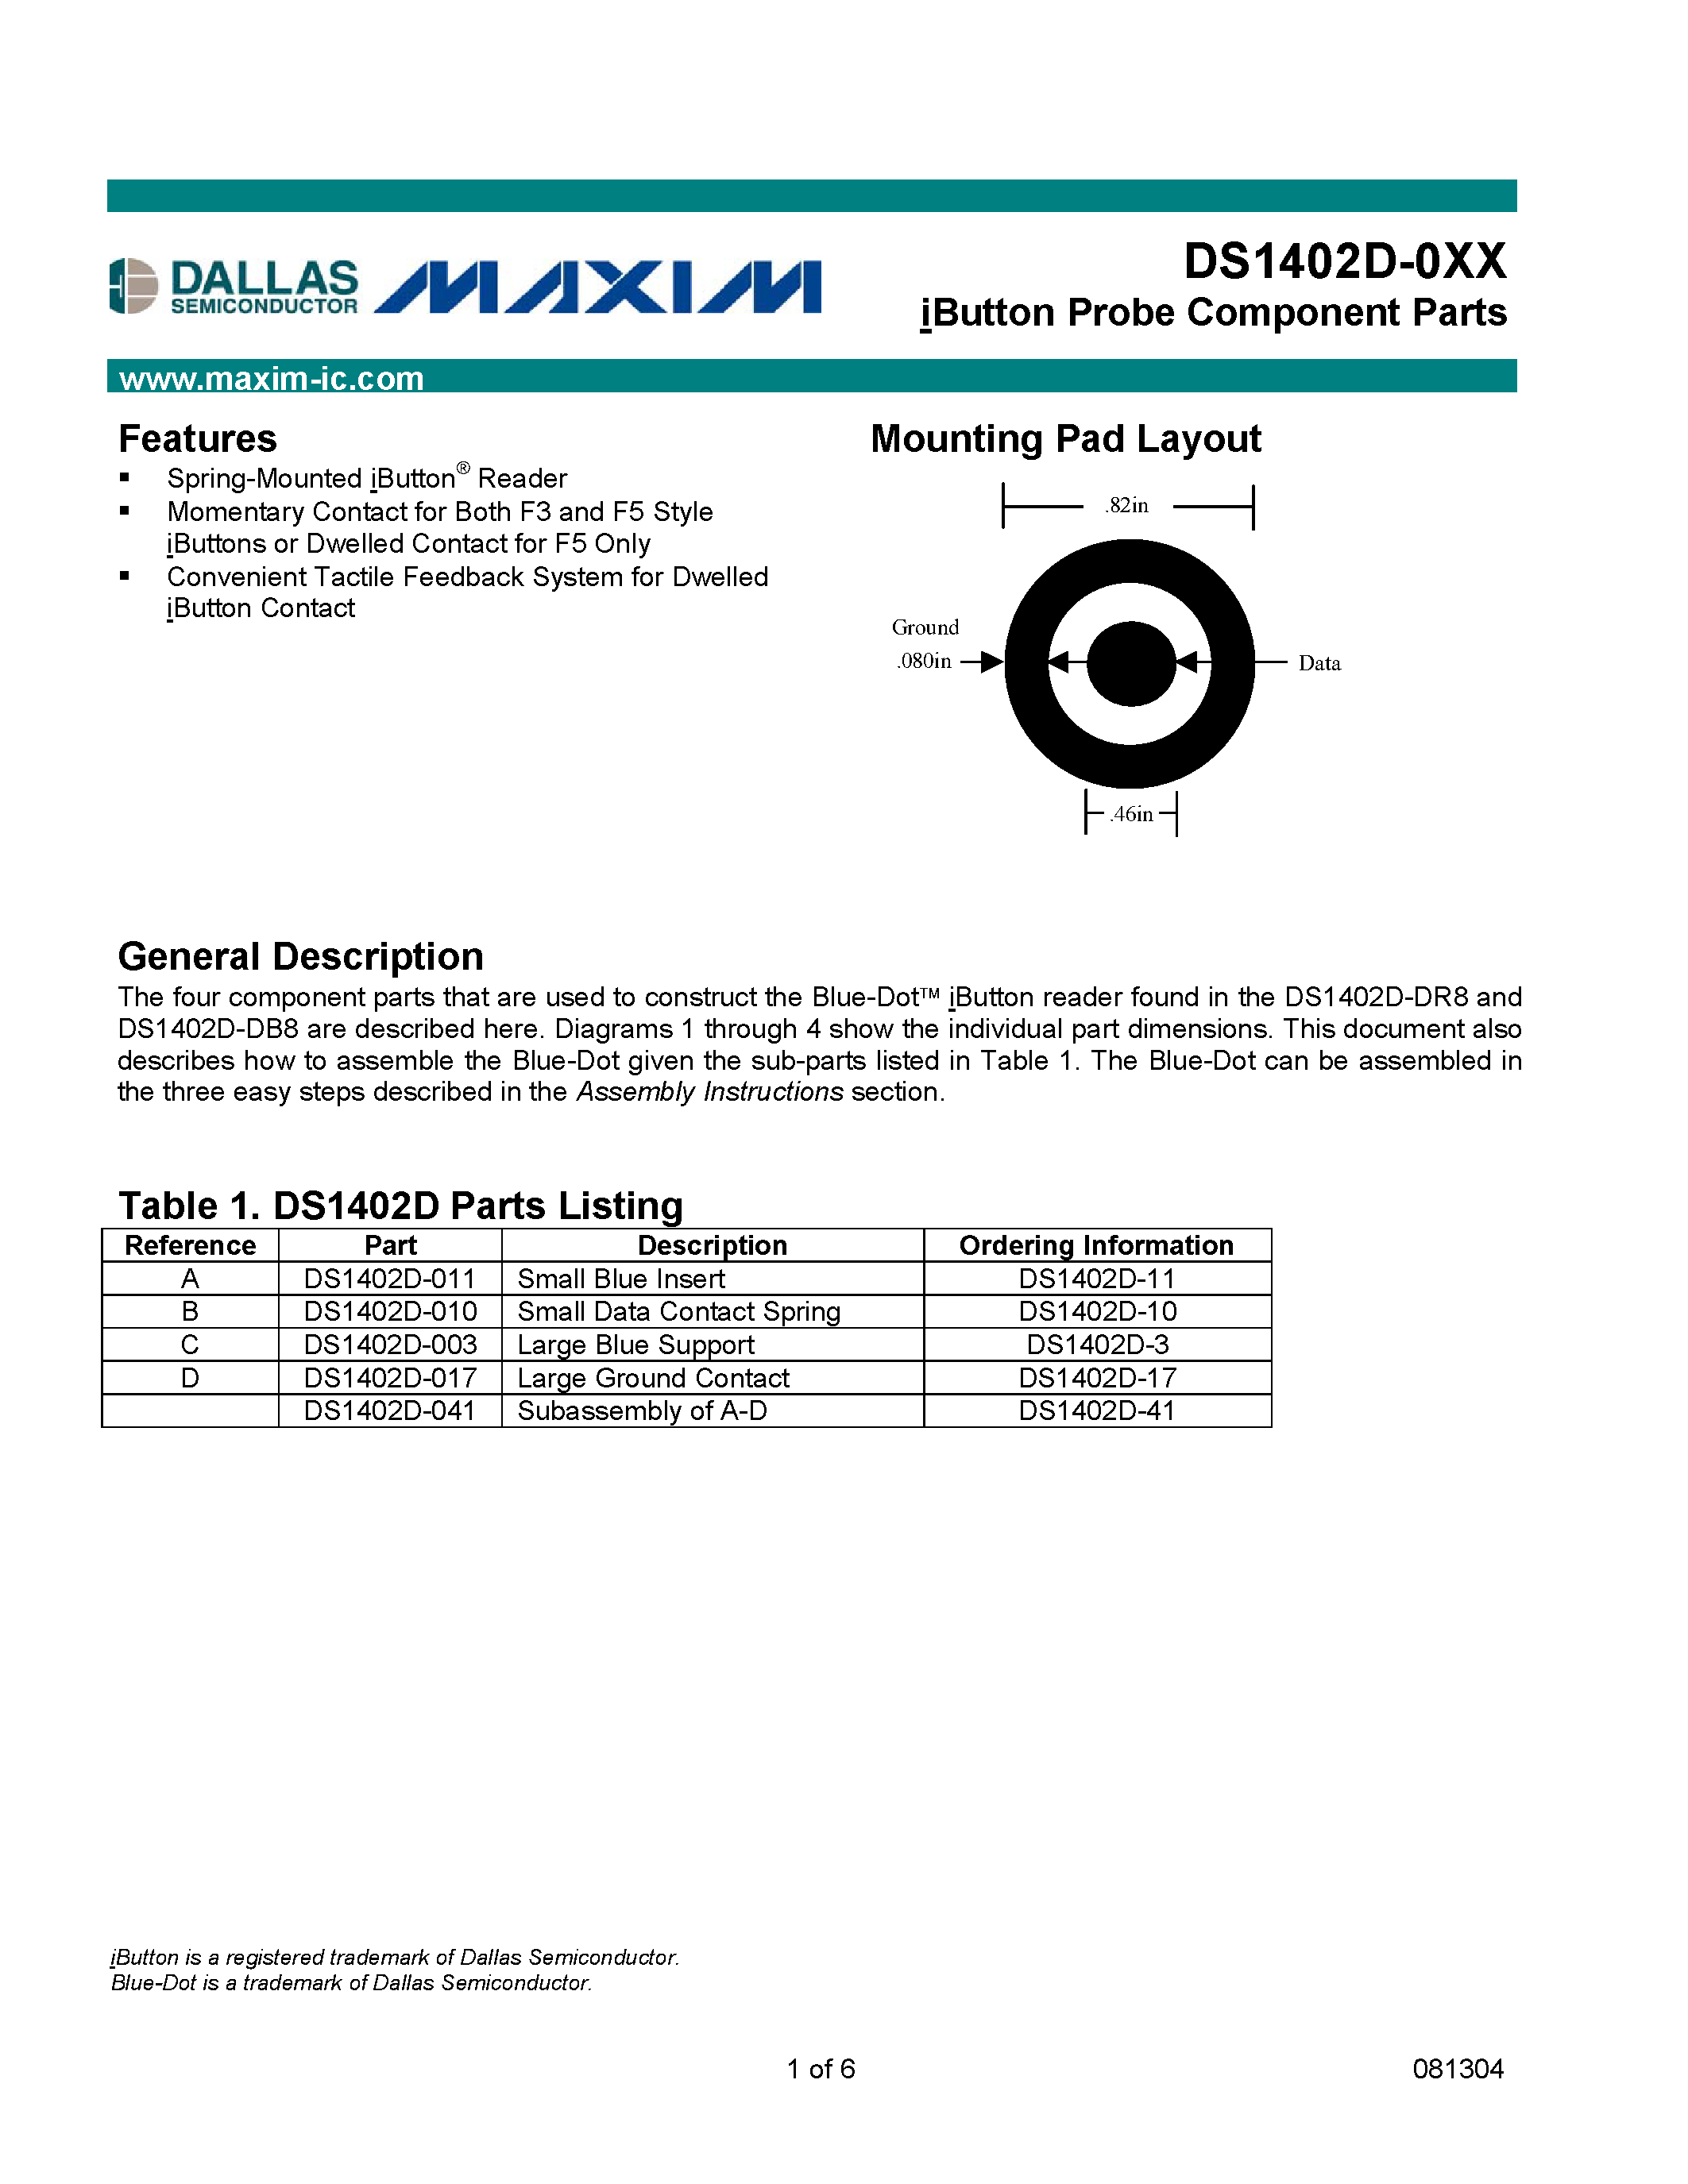 Даташит DS1402D-41 - iButton Probe Component Parts страница 1